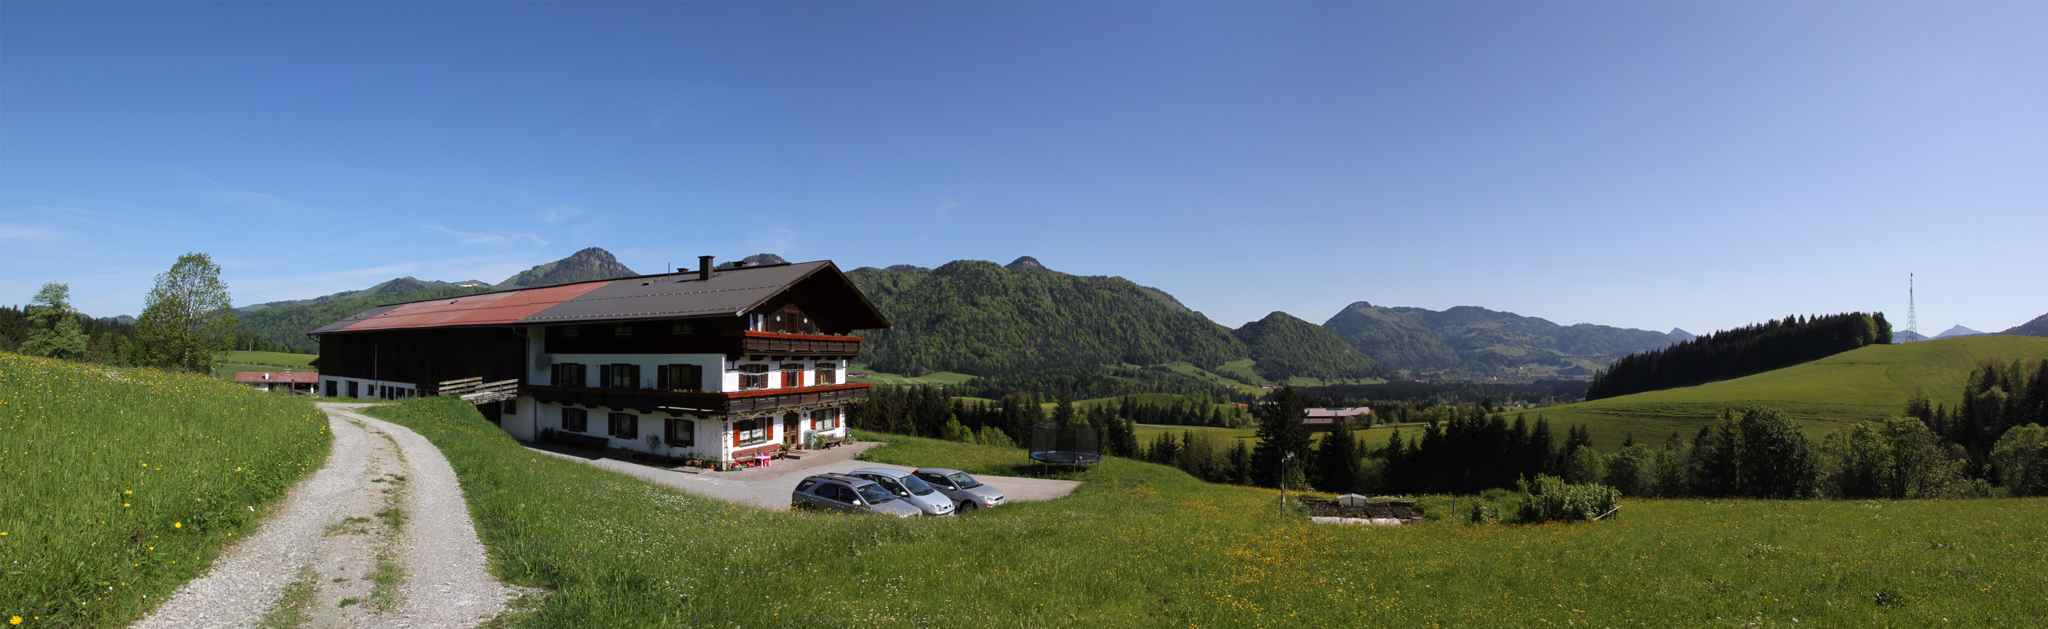 Ferienwohnung mit Bergblick und Heizung Bauernhof in Österreich